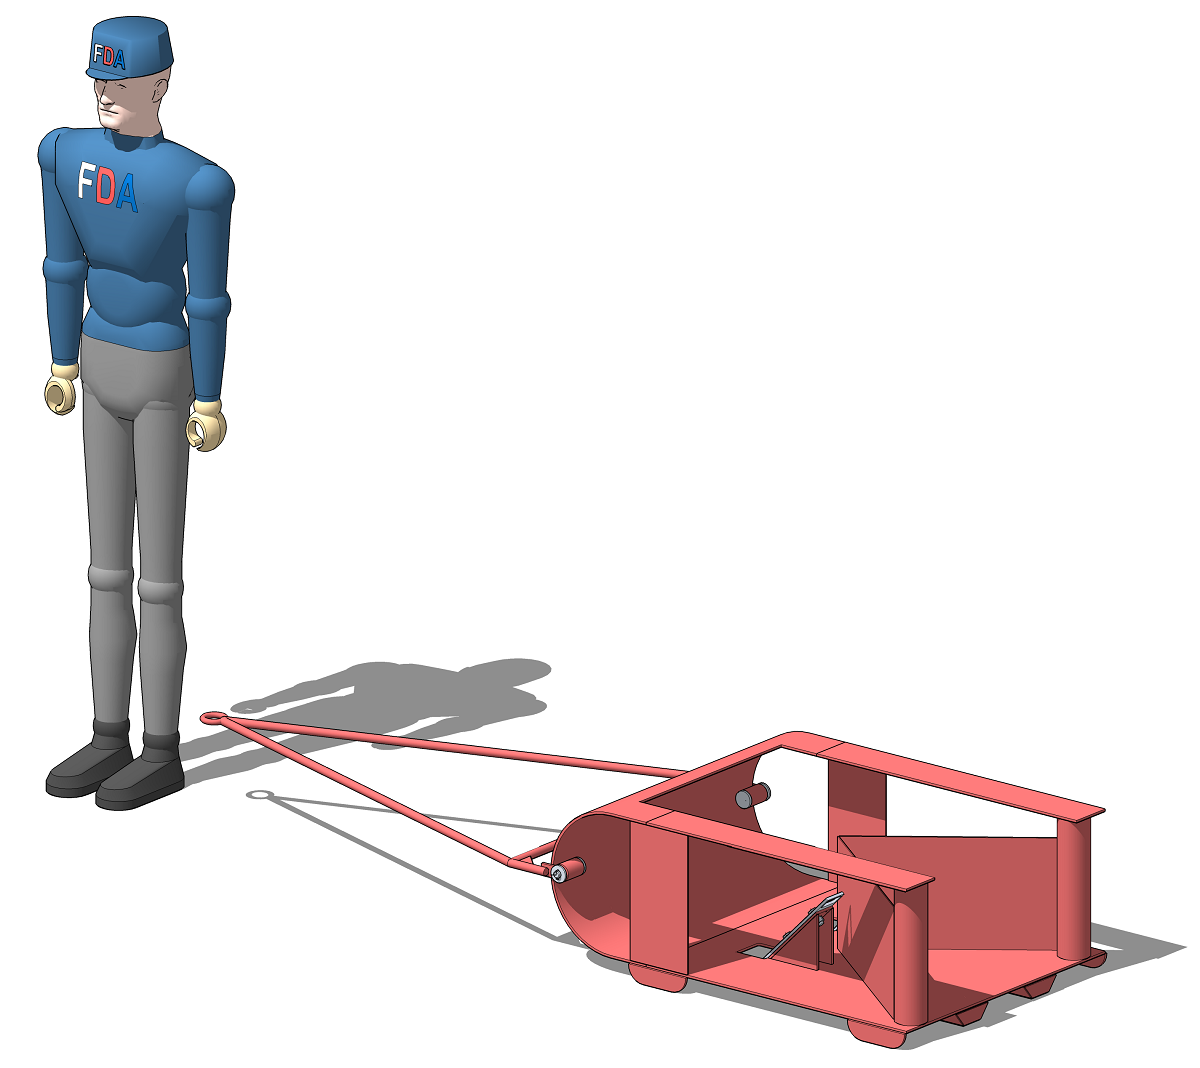 3D визуализация резака (бороны) для прокладки лыжни с человеком, в реальном масштабе